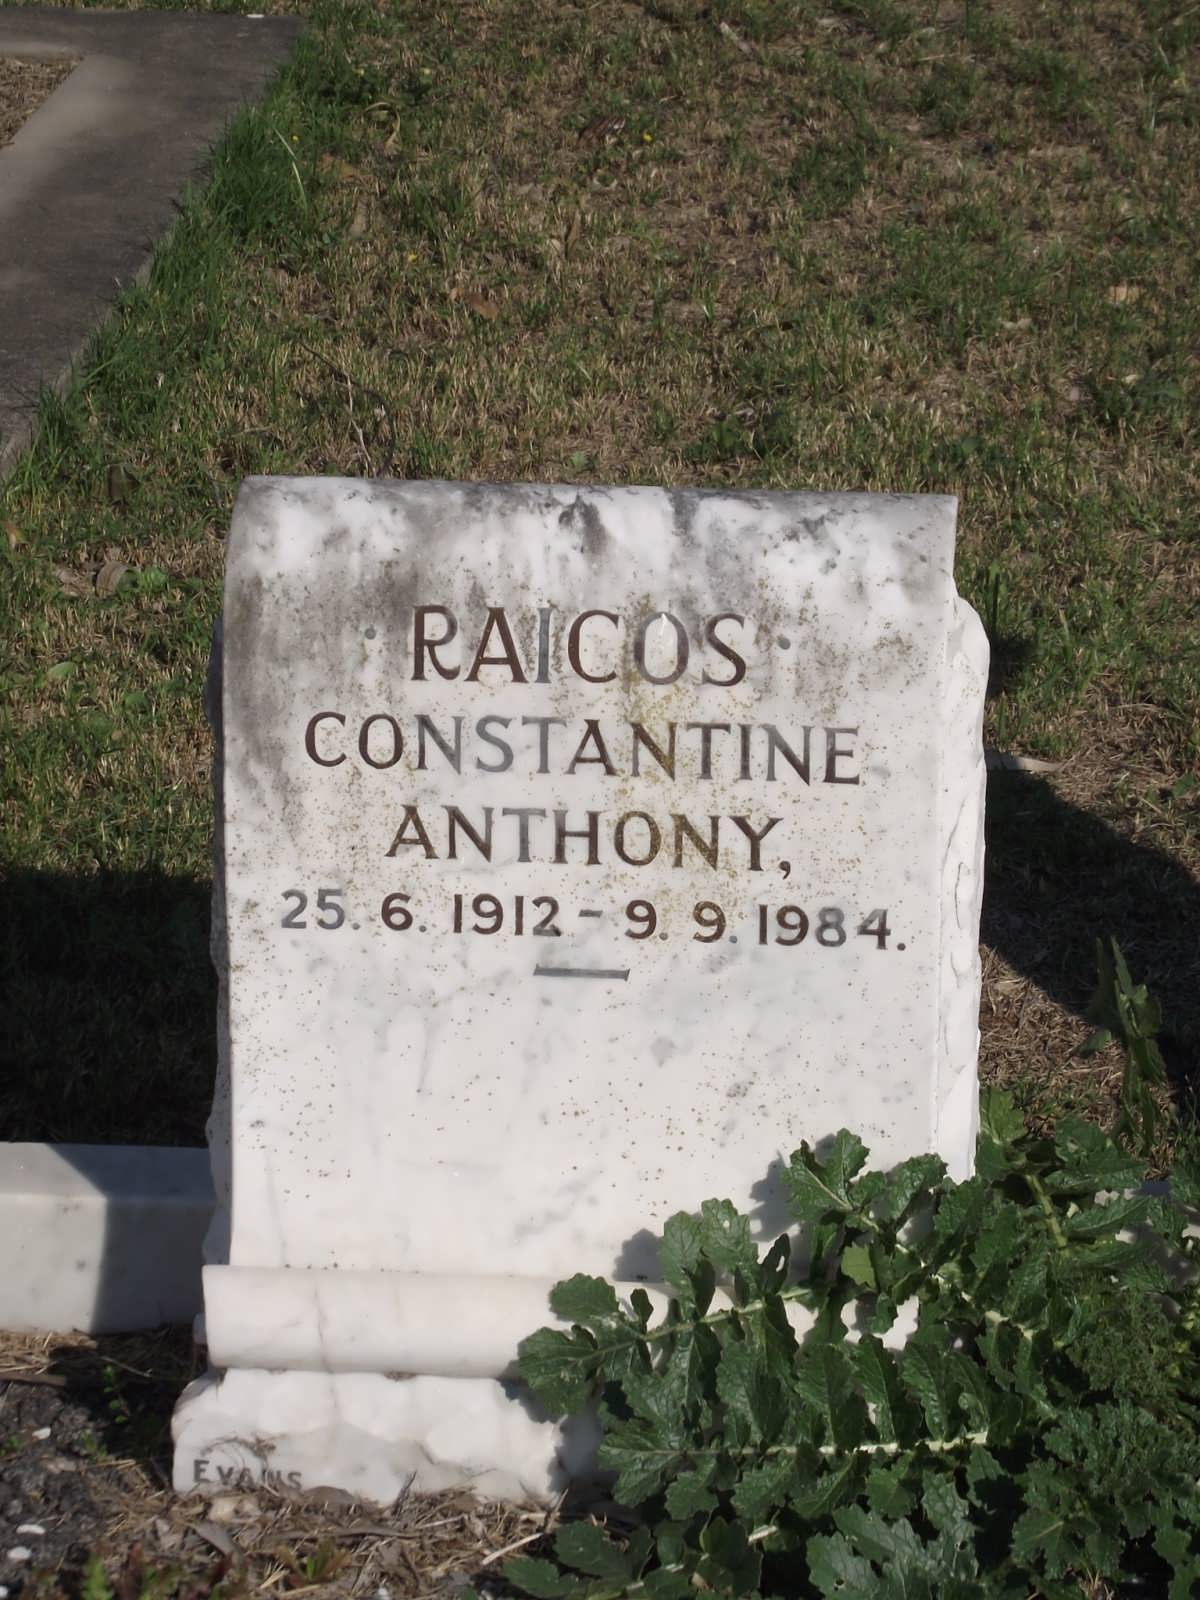 RAICOS Constantine Anthony 1912-1984